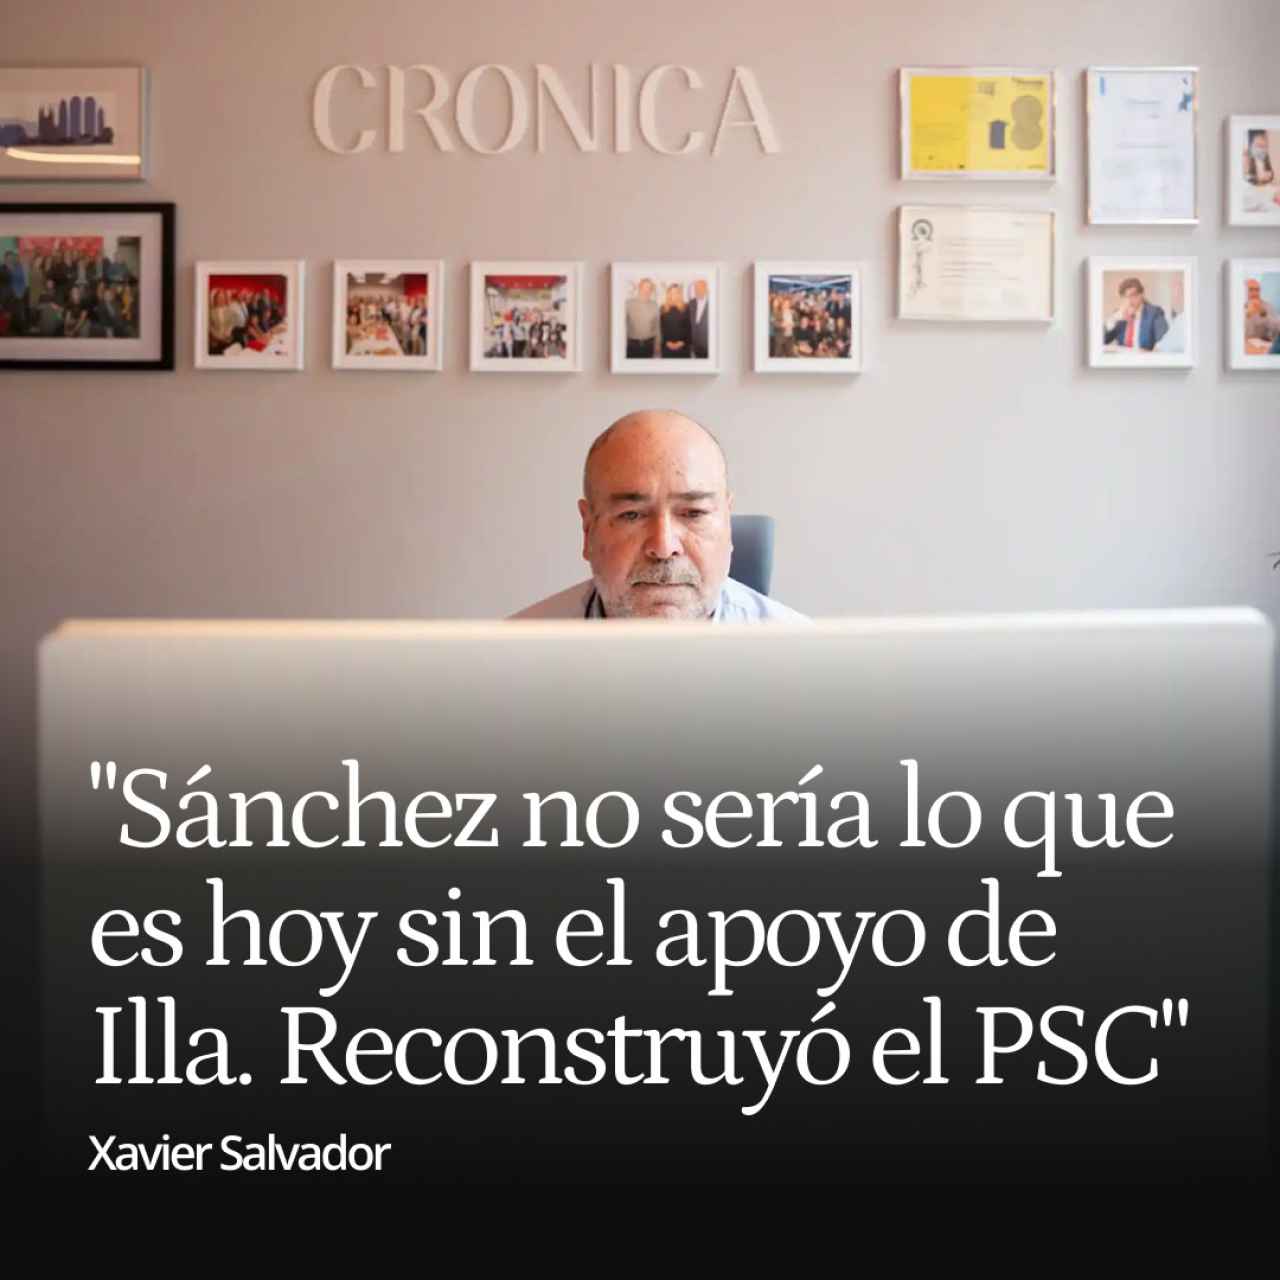 Xavier Salvador: "Sánchez no sería lo que es hoy sin el apoyo de Illa. Ha reconstruido el PSC"